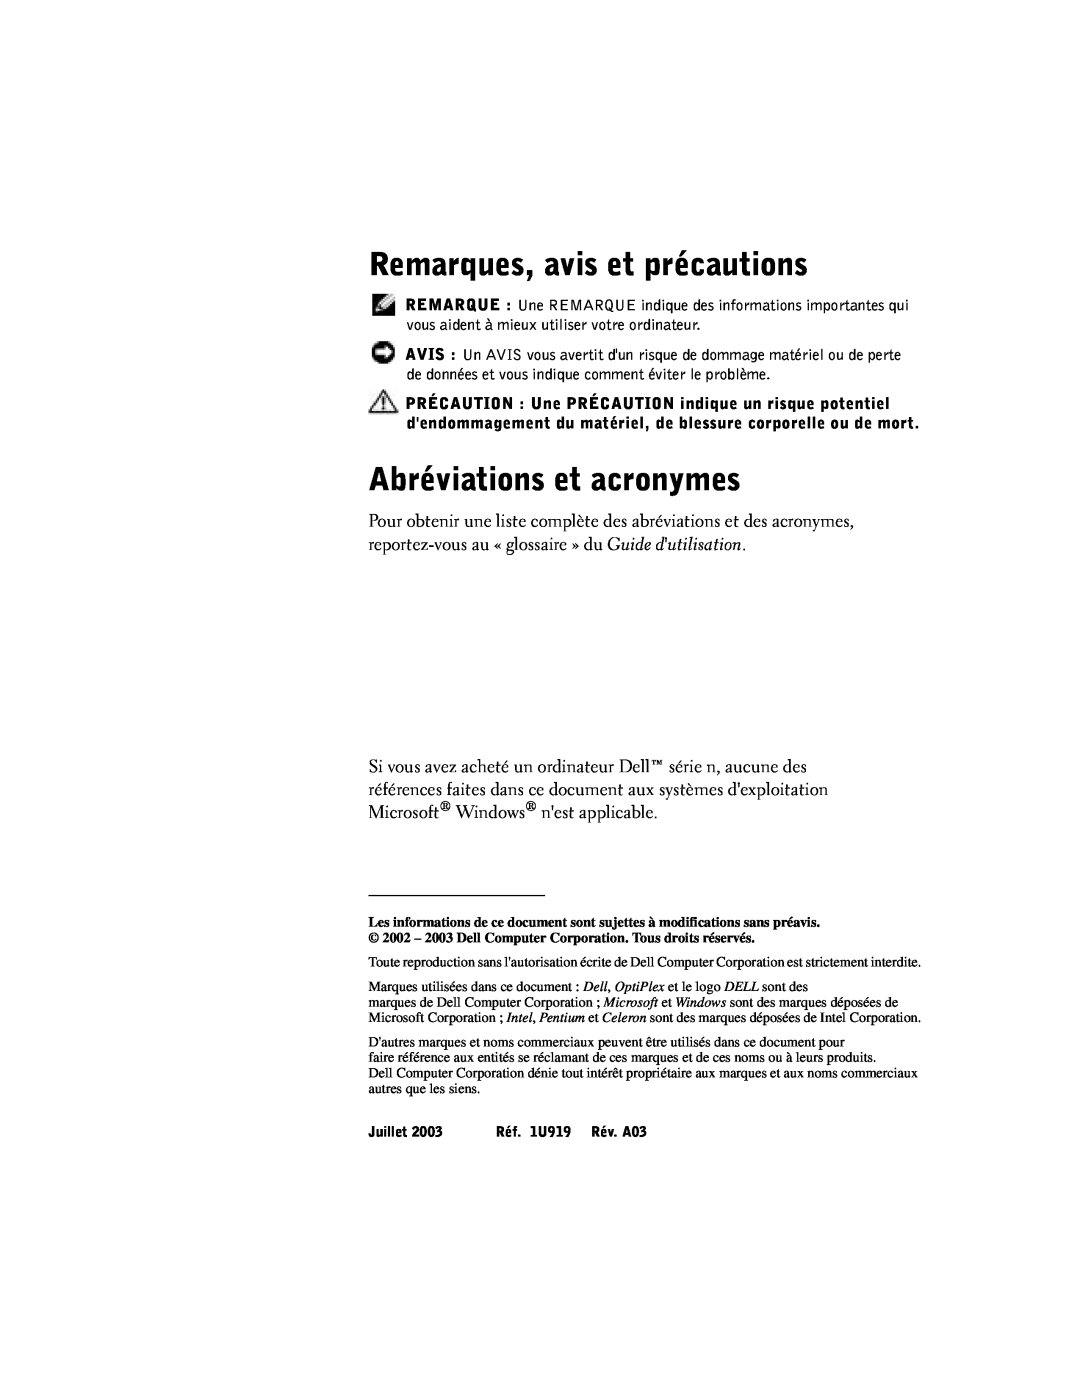 Dell SX manual Remarques, avis et précautions, Abréviations et acronymes, Juillet, Réf. 1U919 Rév. A03 